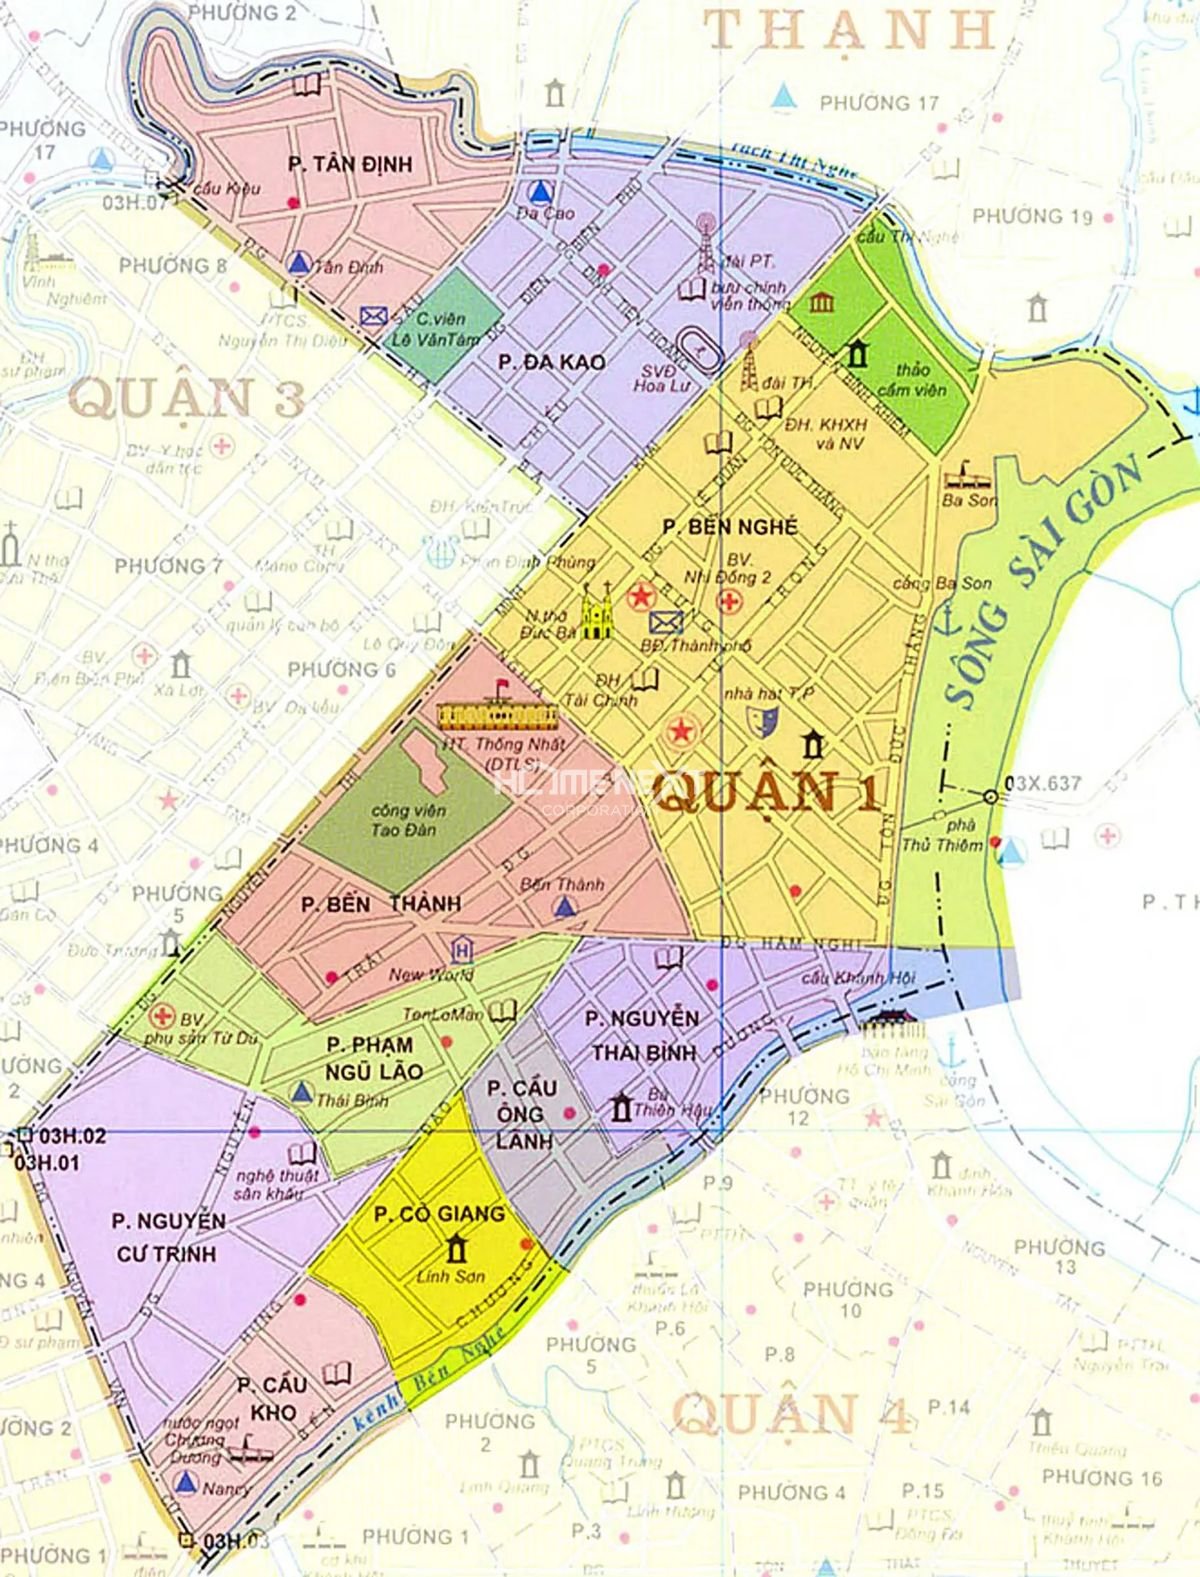 Bộ sưu tập bản đồ quận 1 Sài Gòn chính xác và dễ sử dụng